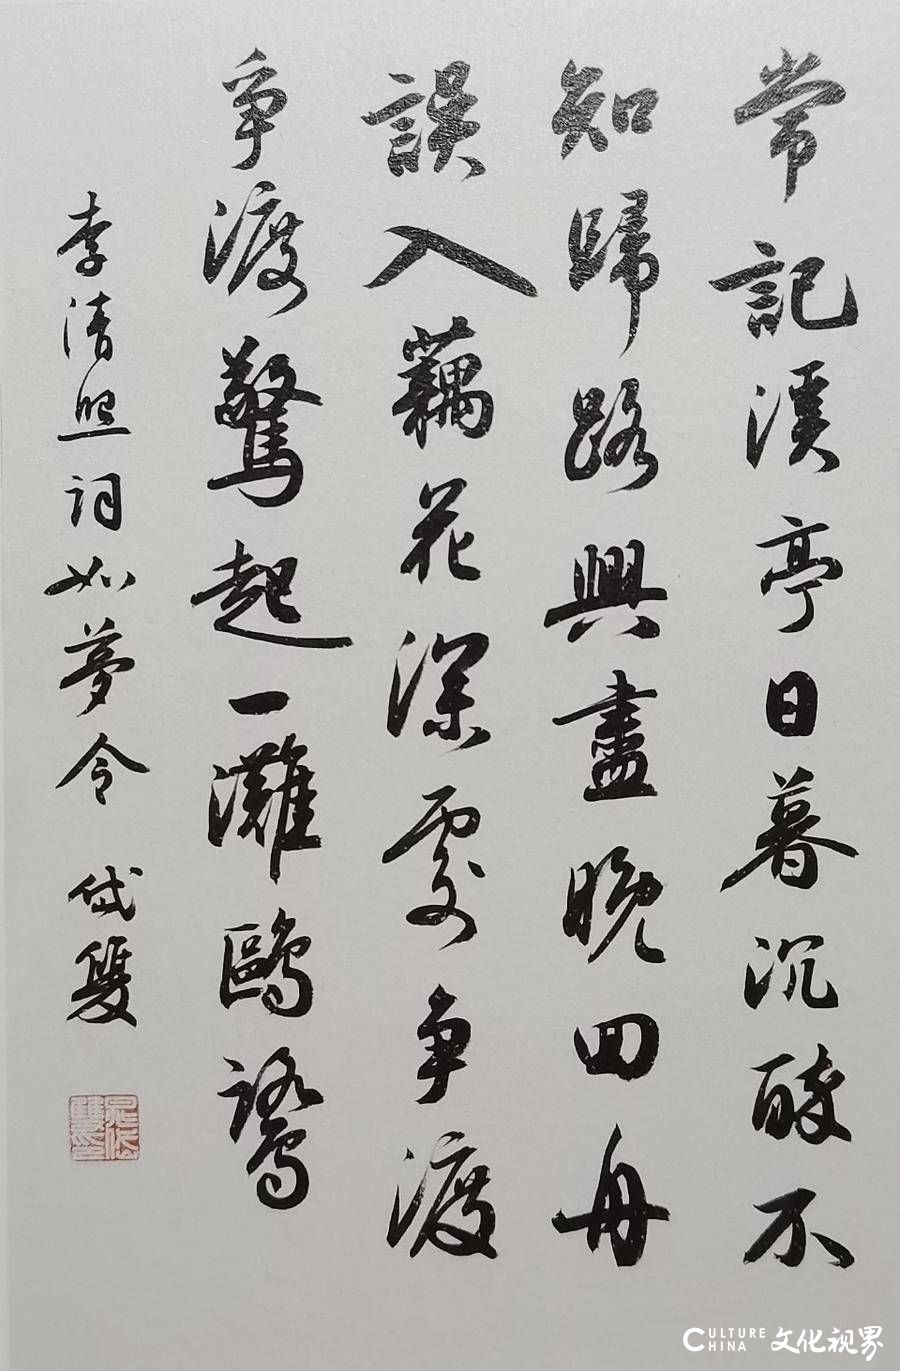 中国古代书法研究所正式成立，晁岱双博士任所长